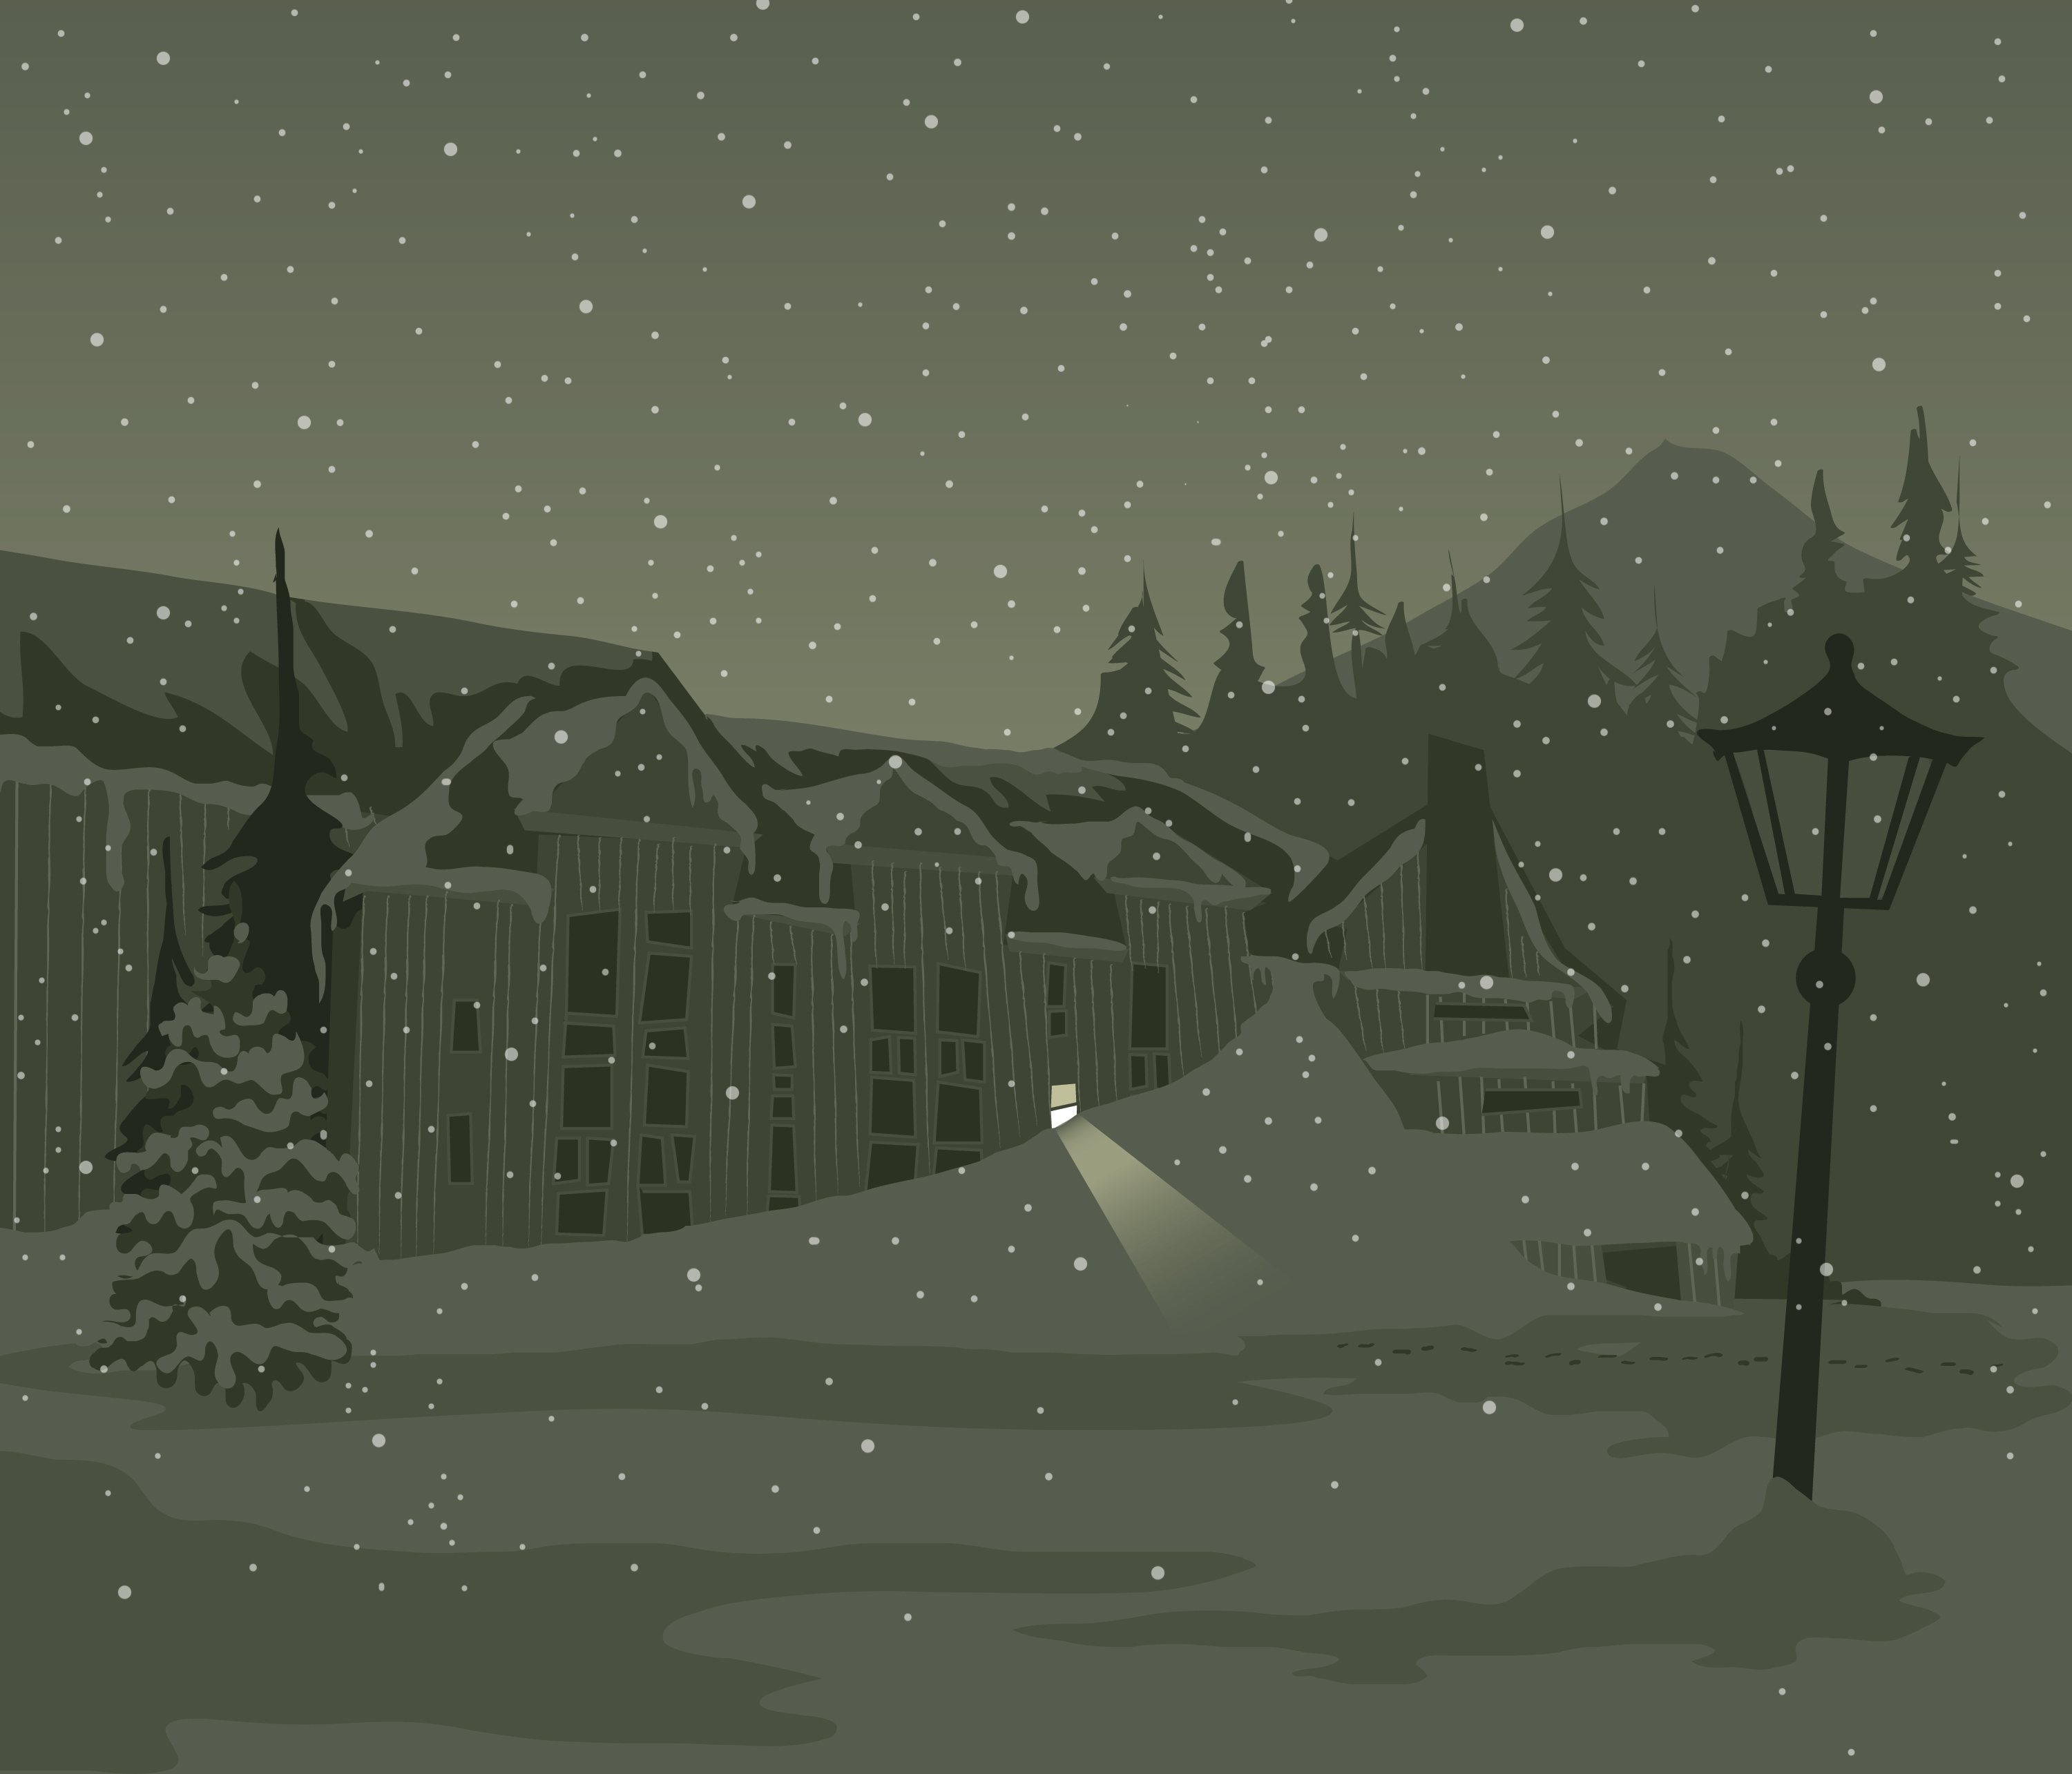 snow, night, buildings, lamp posts - desktop wallpaper